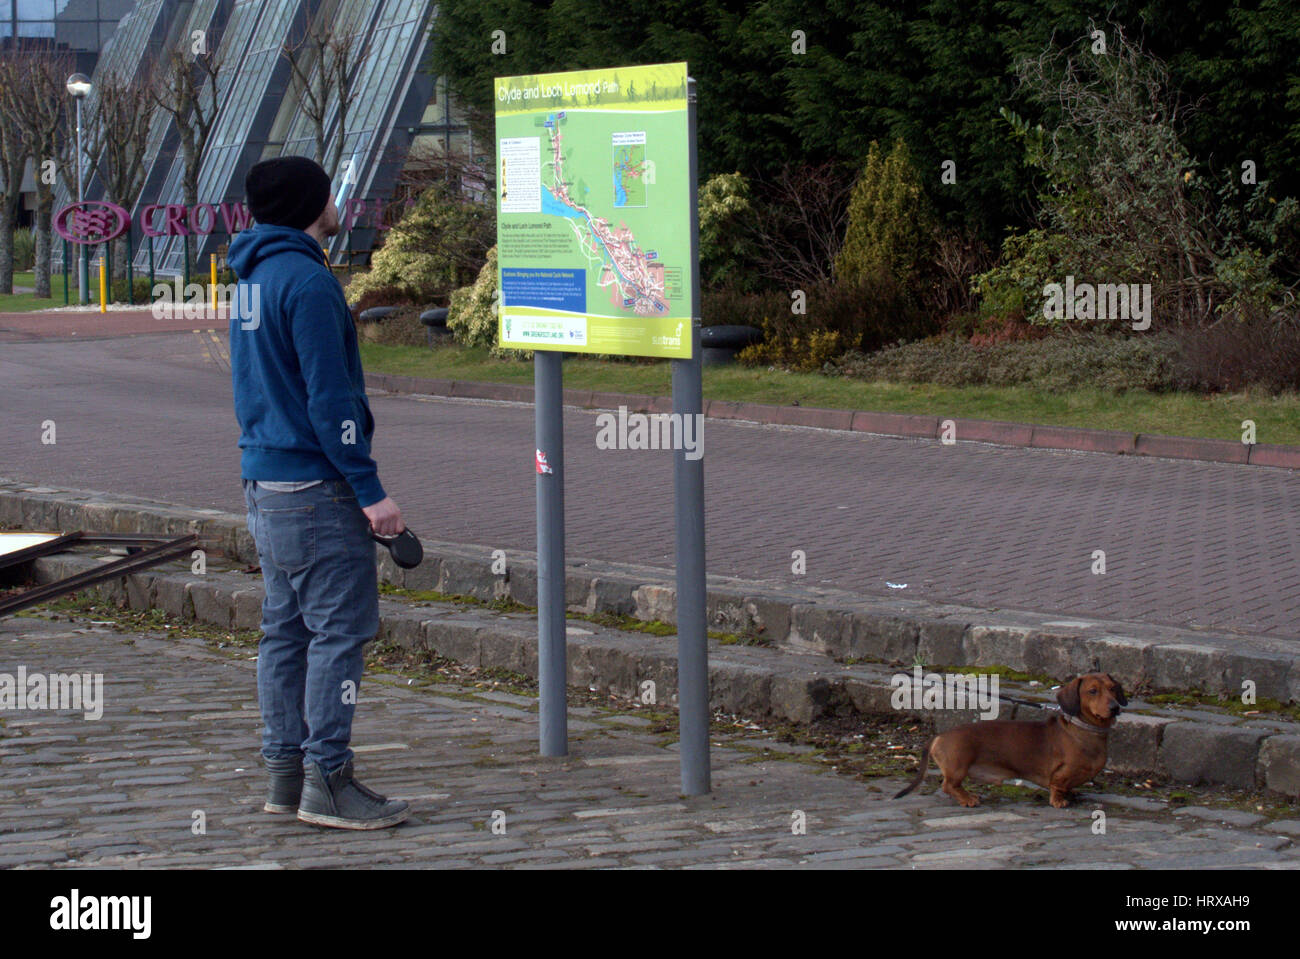 Homme avec chien à la recherche de carte touristique de Glasgow Clyde walkway Banque D'Images